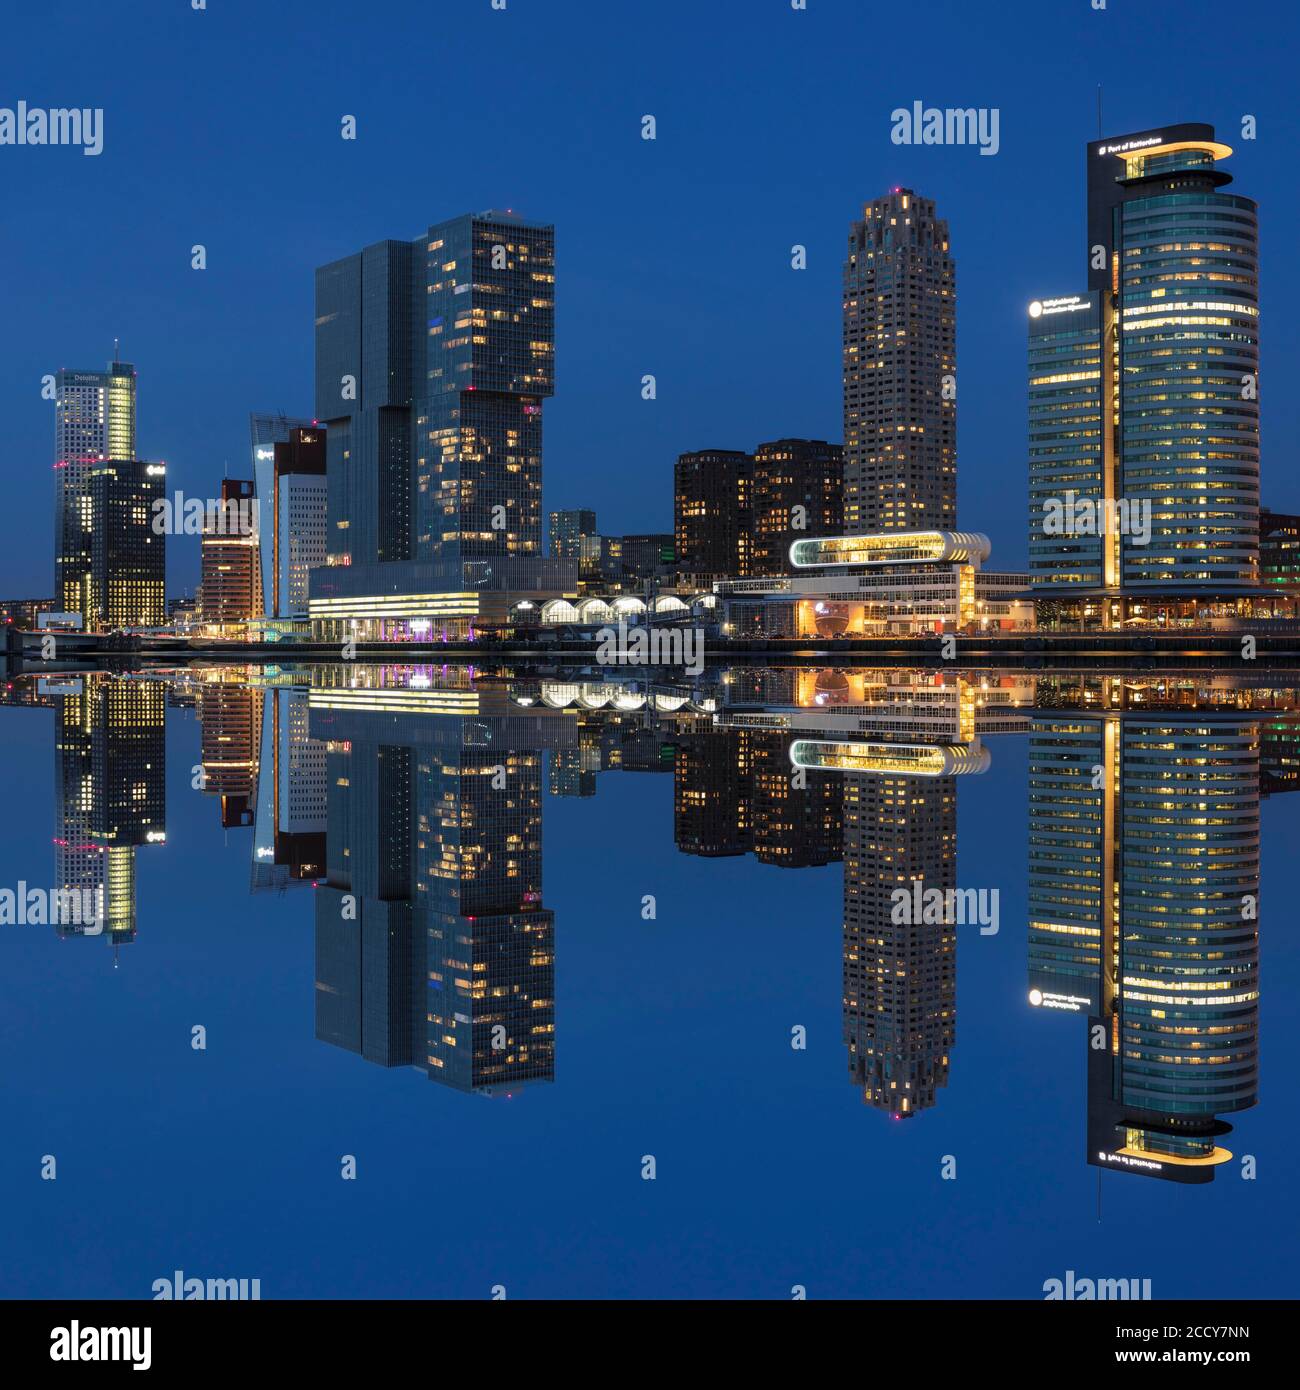 Nieuwe Maas mit Wolkenkratzern zur blauen Stunde, Rotterdam, Zuid-Holland, Niederlande Stockfoto